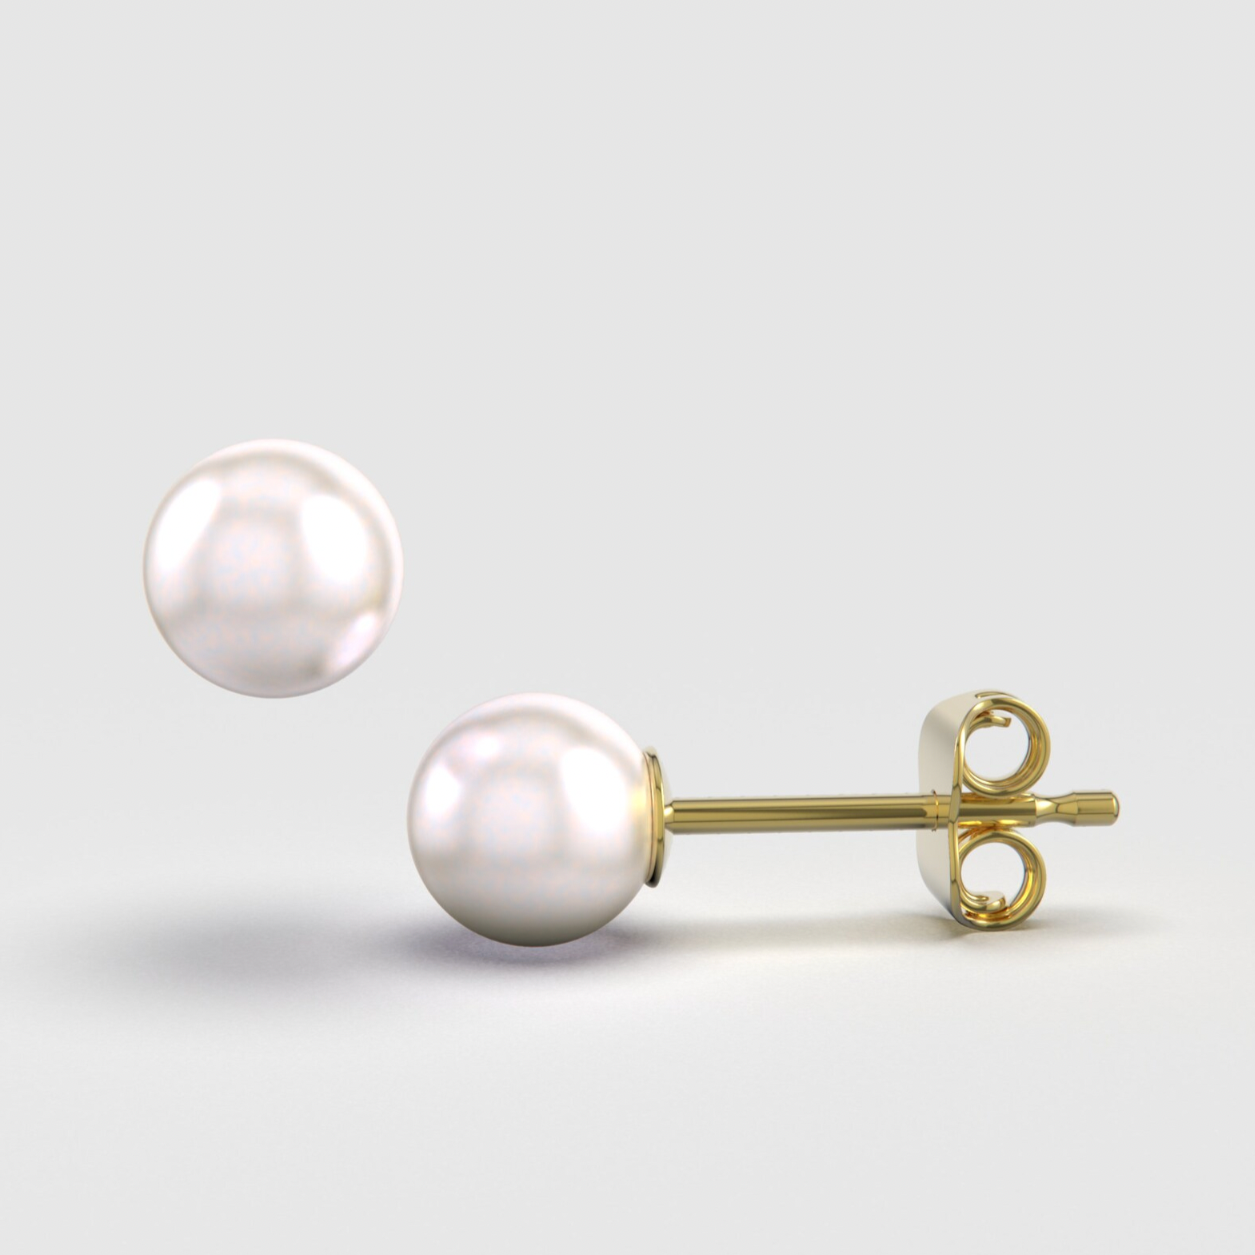 Genuine Pearl Stud Earrings 14K Gold Earrings - BEYOND